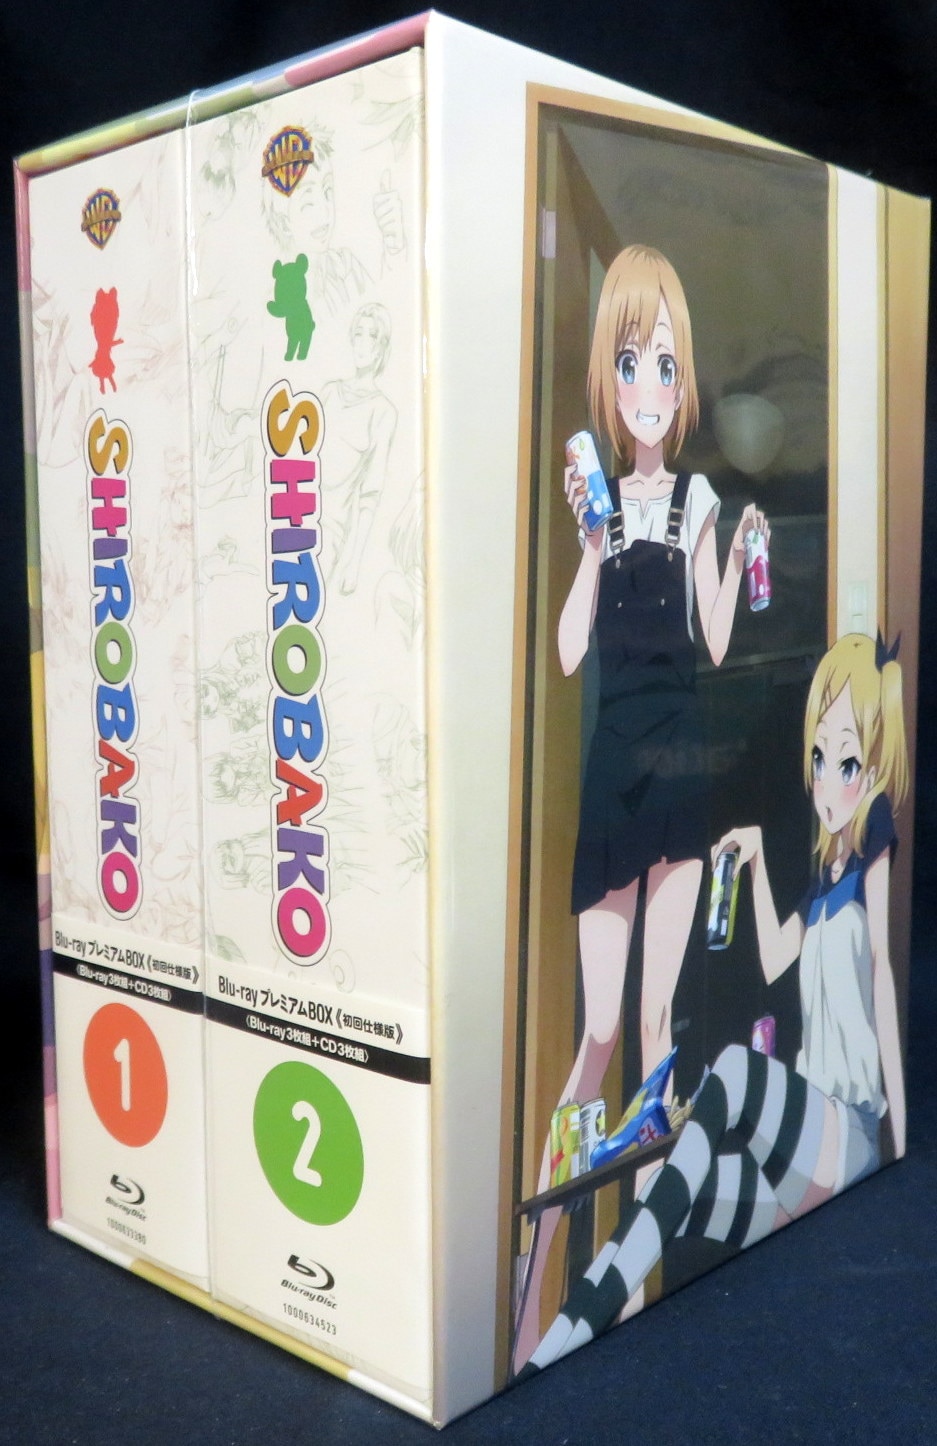 アニメBlu-ray 初回版 SHIROBAKO Blu-rayプレミアムBOX全2巻セット